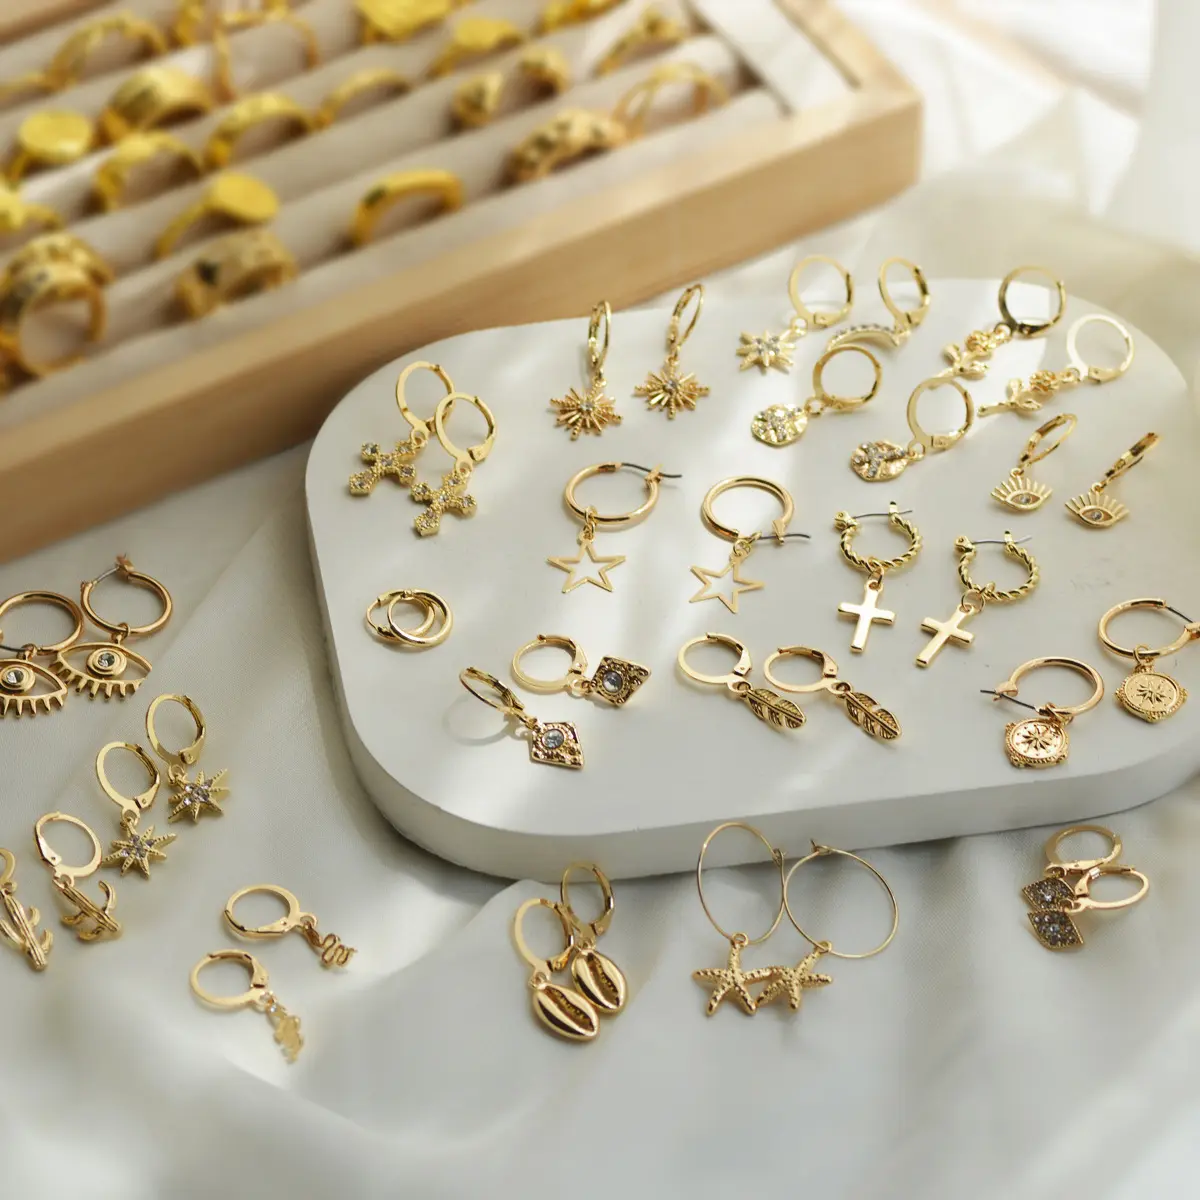 Trendy Earrings Jewelry Accessories Fashion Vintage Geometric Statement Zircon Gold Star Flower Metal Drop Earrings